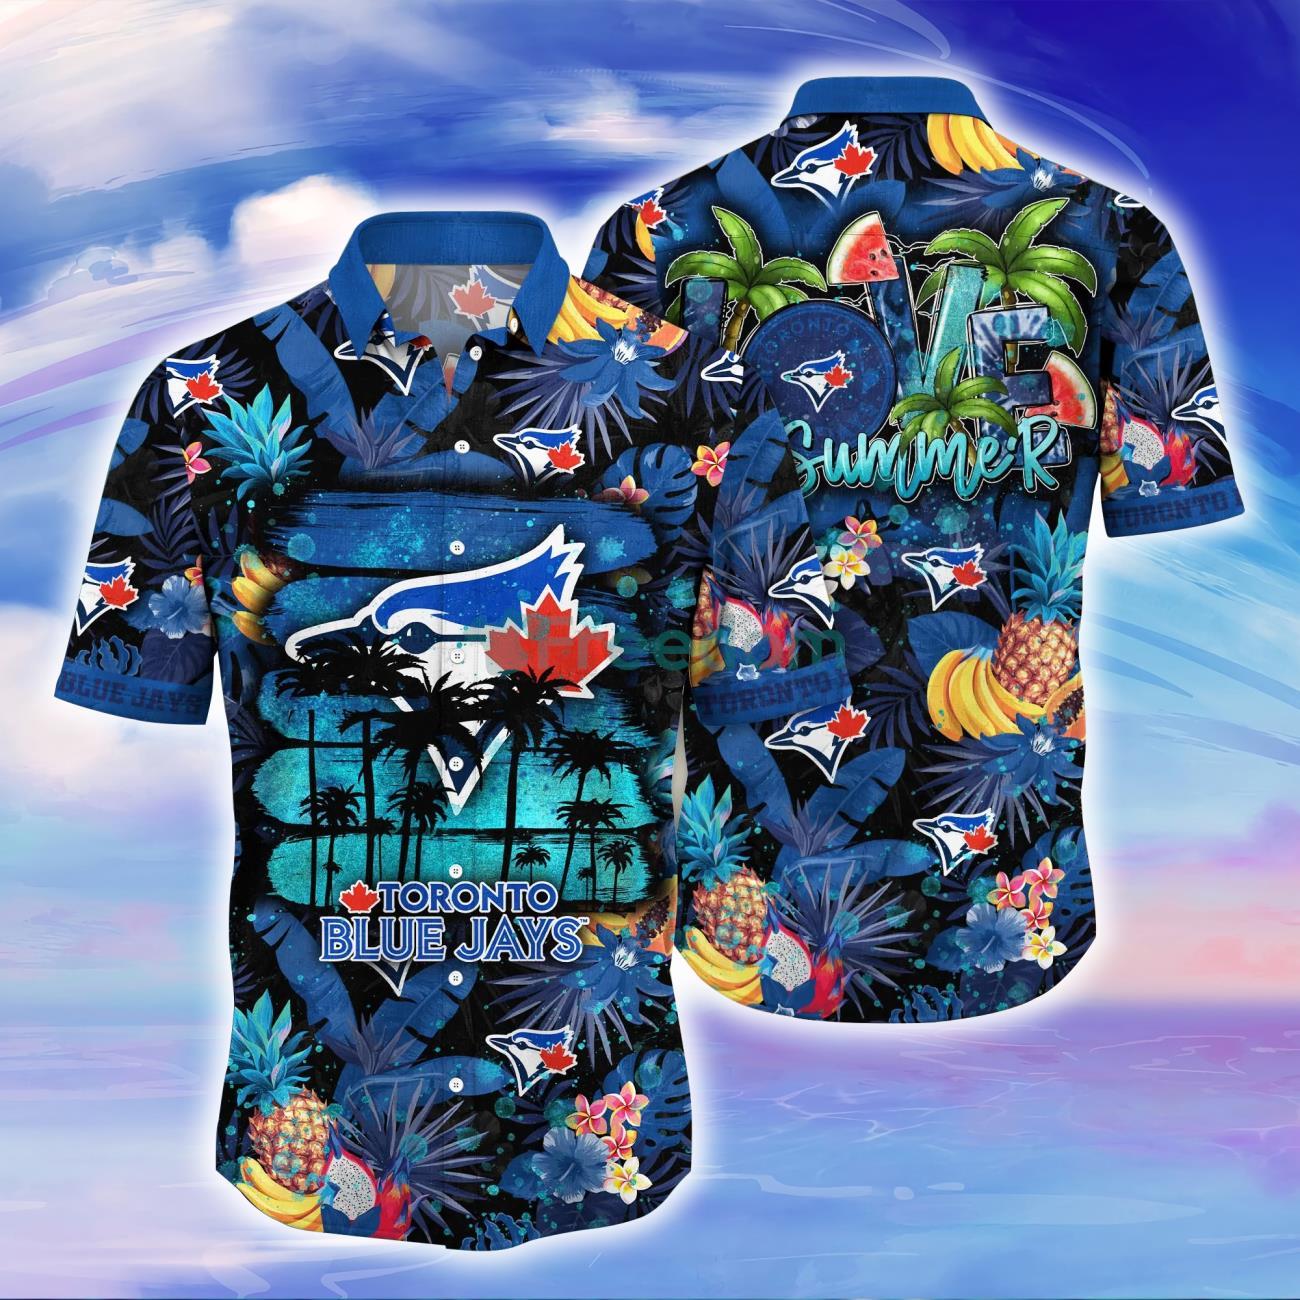 Milwaukee Brewers MLB Flower Hawaiian Shirt Gift For Men Women Fans -  Freedomdesign